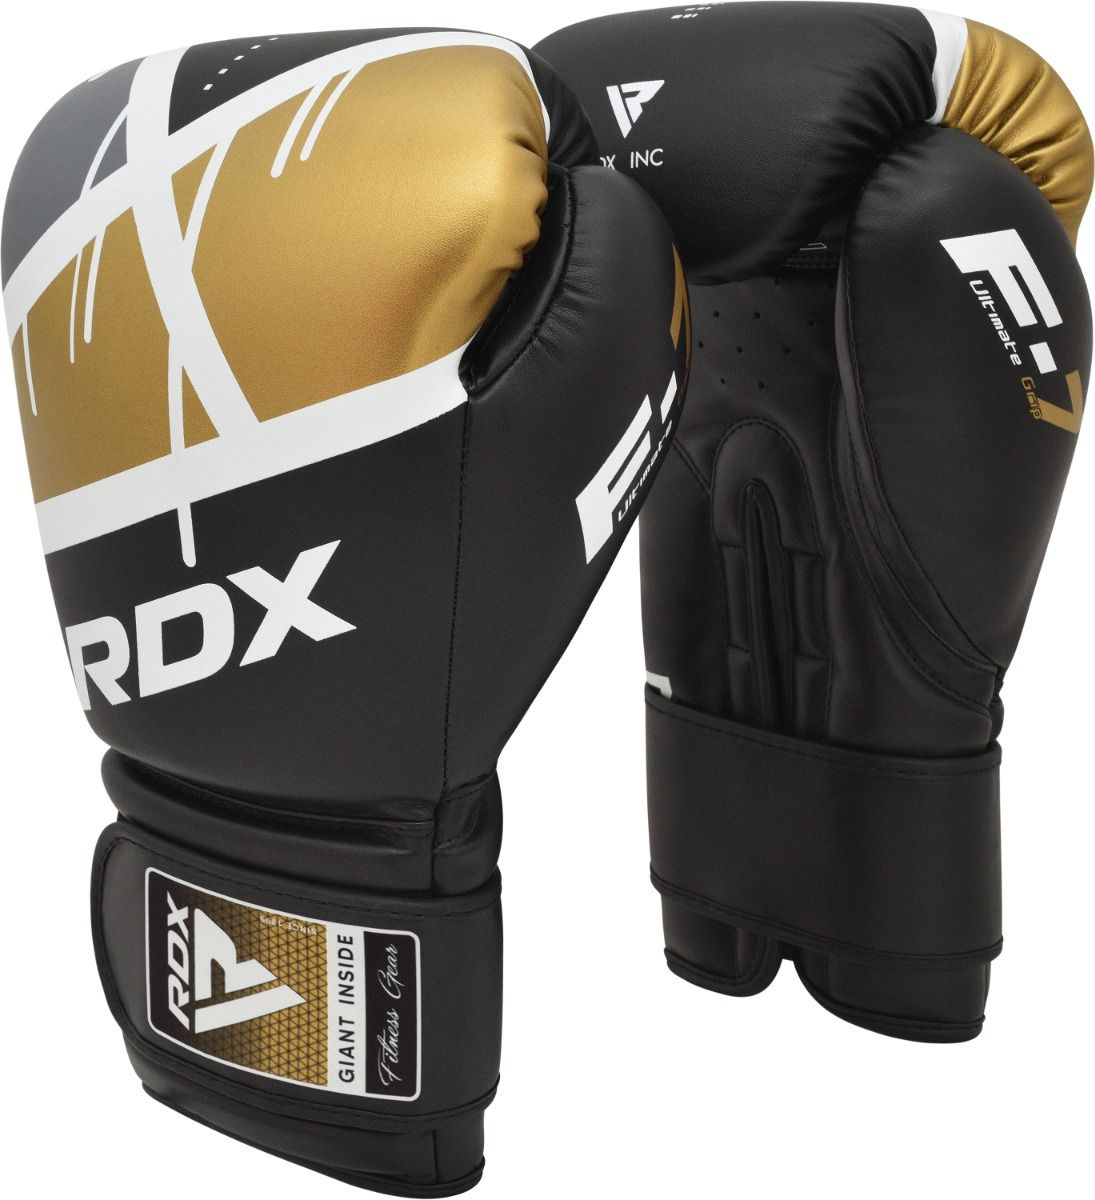 Boxerské rukavice RDX F7 black/golden vel. 16 oz